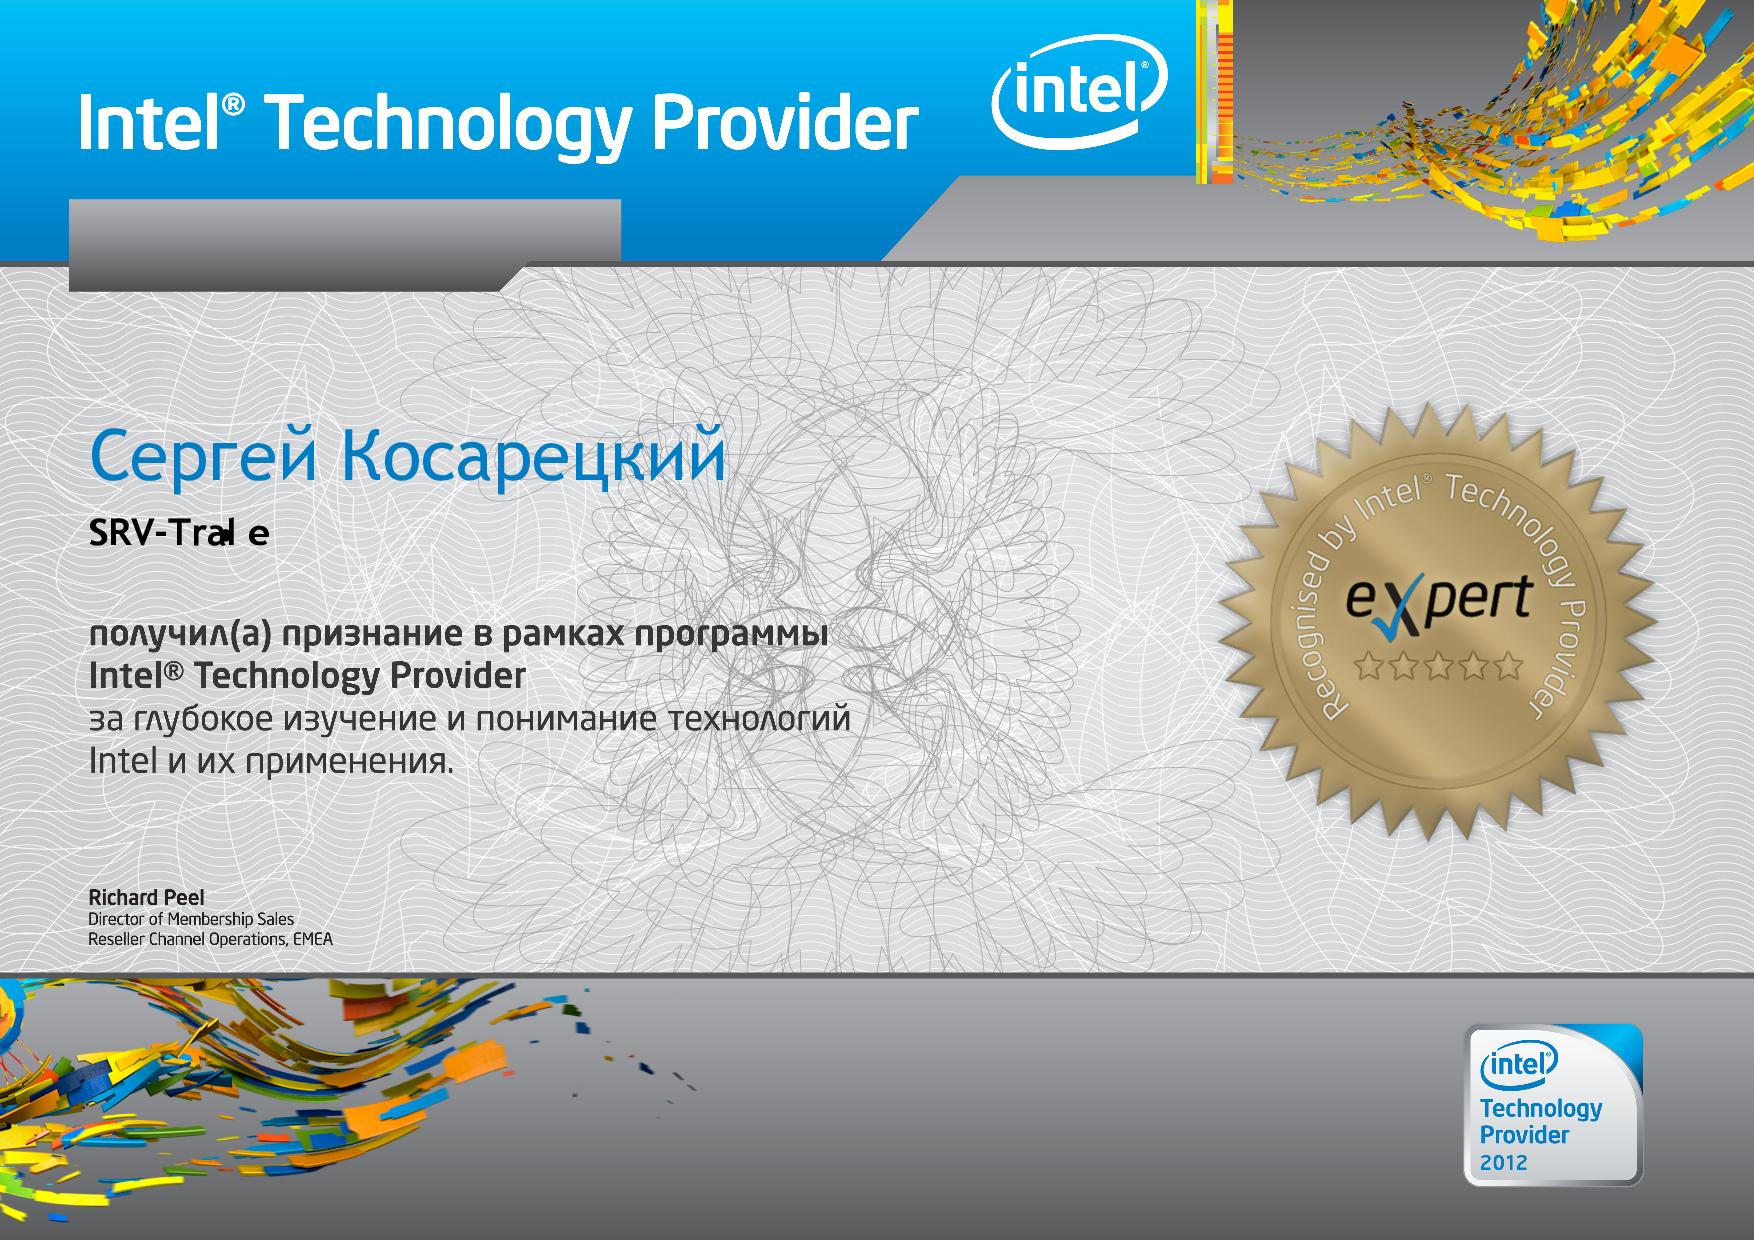 Сергей Косарецкий, Intel сертифицированный специалист